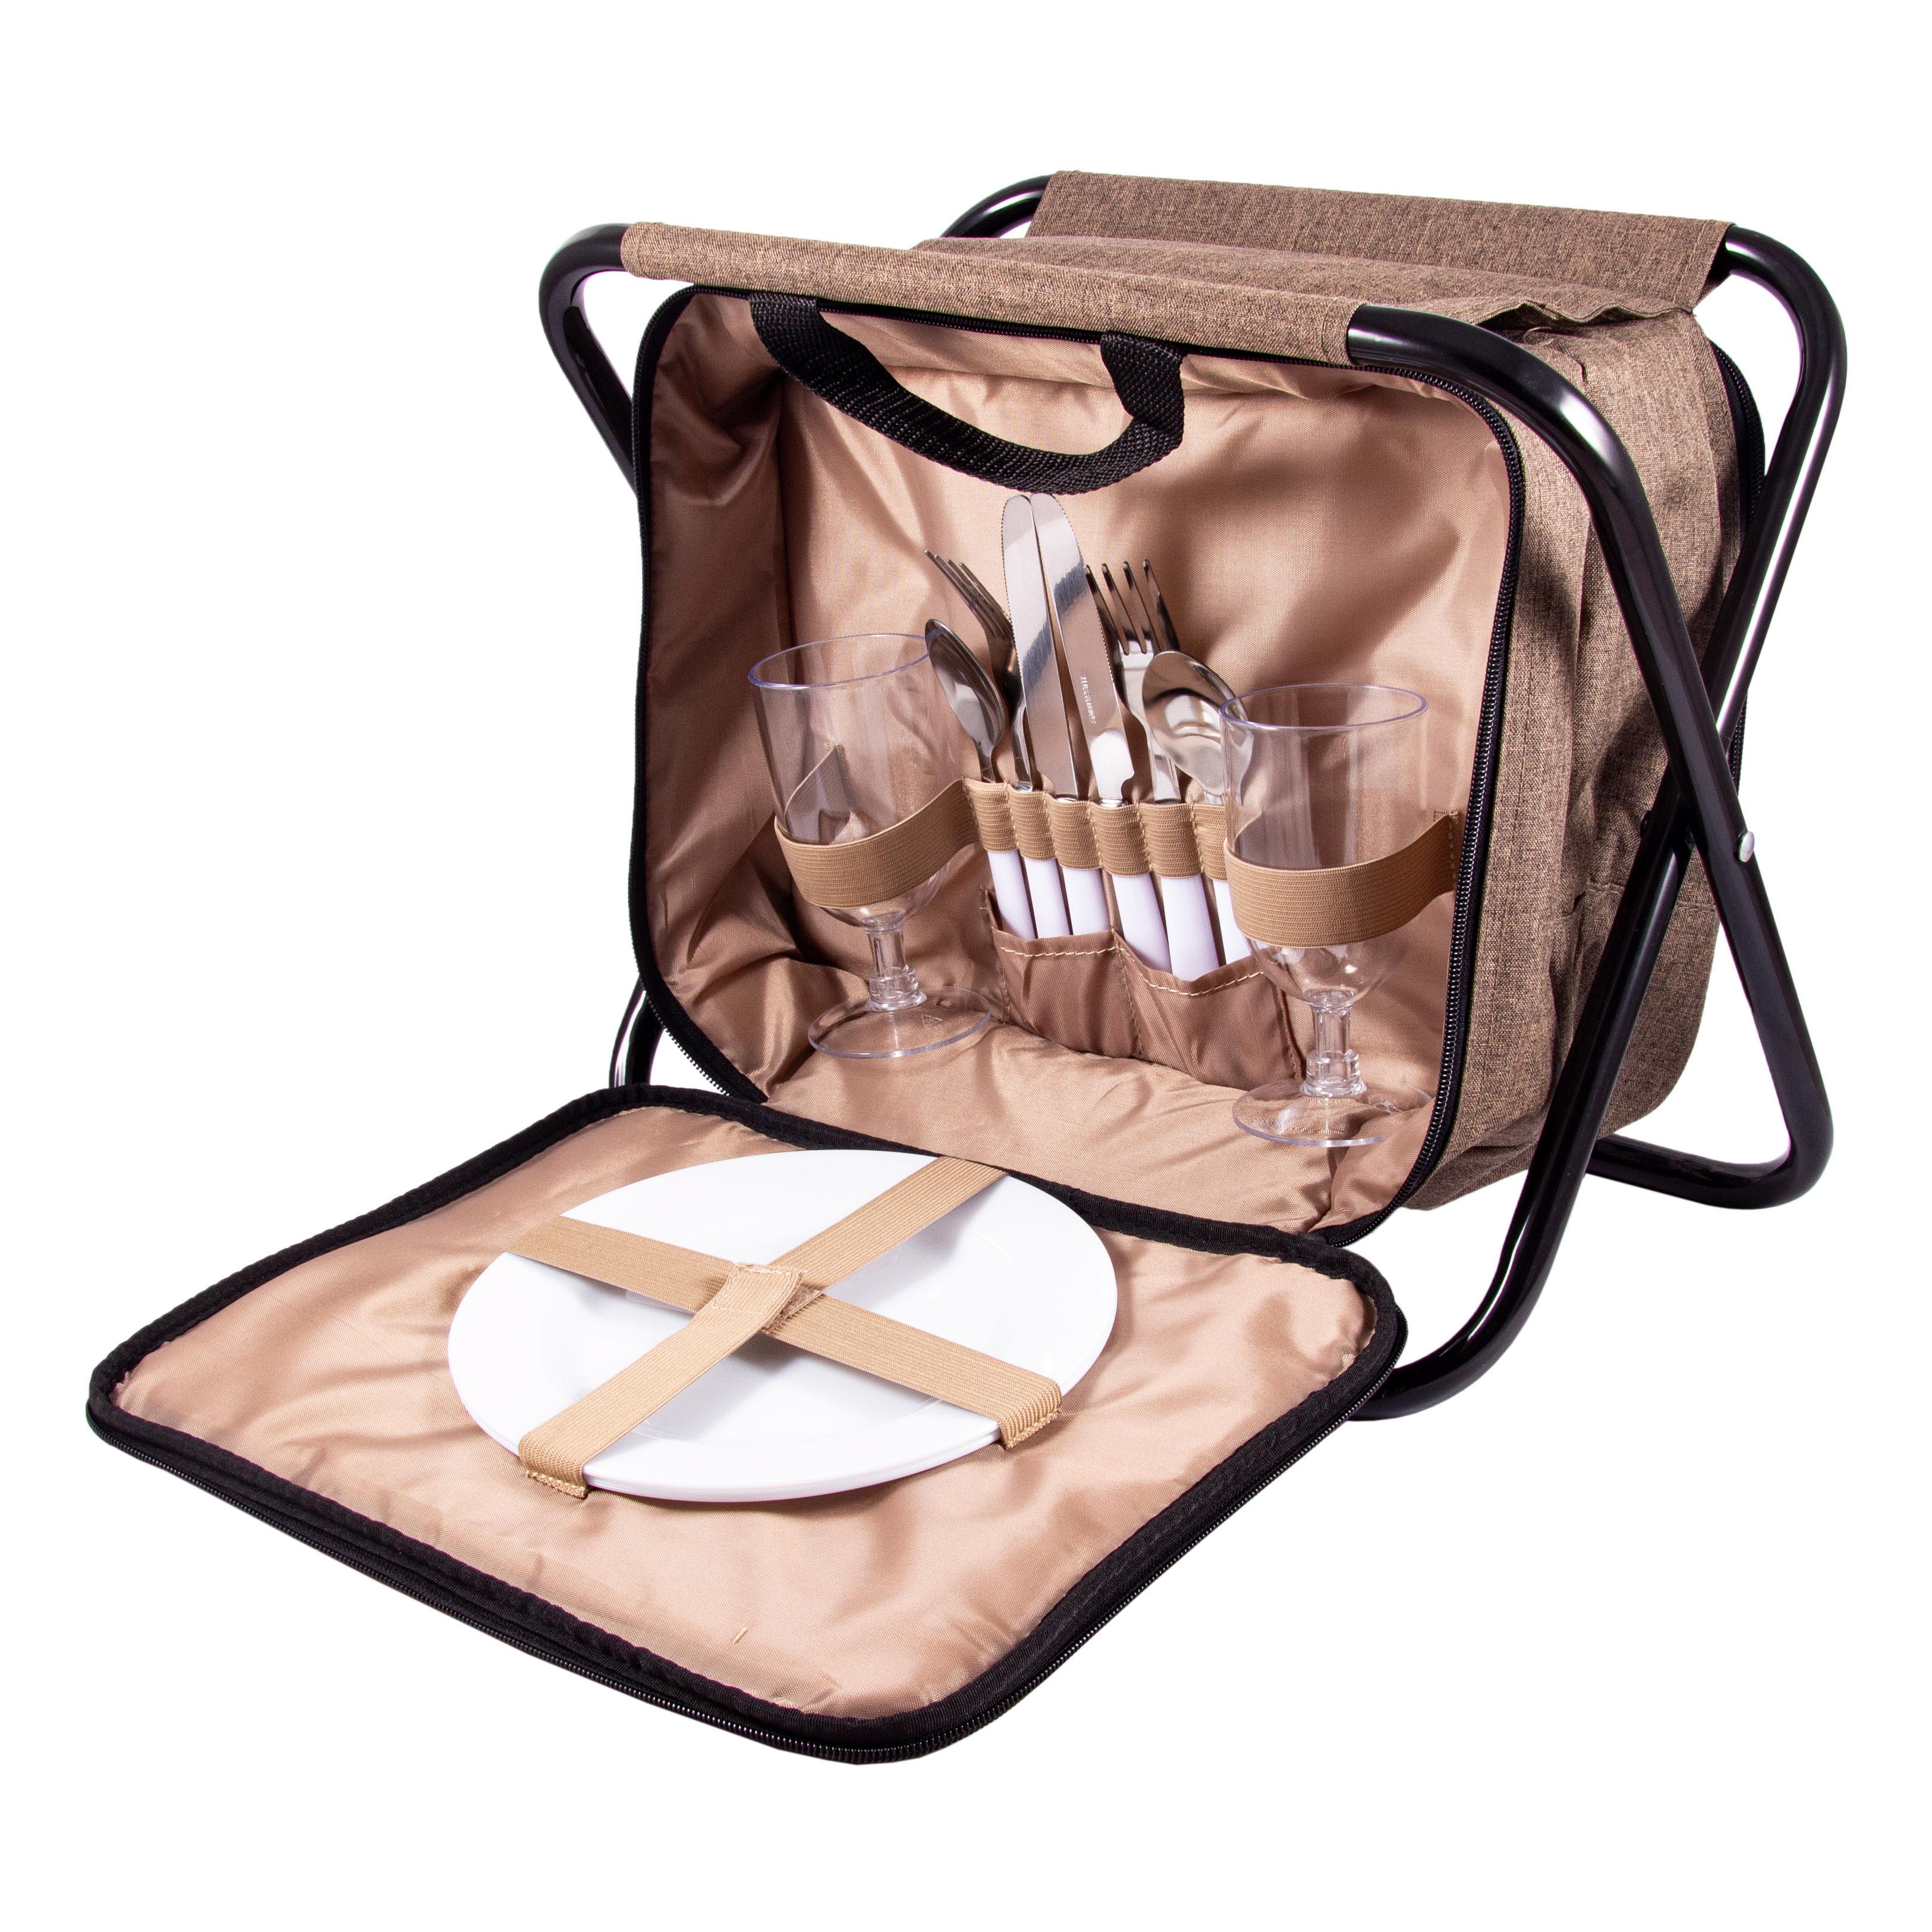 Набор для пикника на 2 персоны в сумке-стульчике, 33x23x25 см, арт. 130021